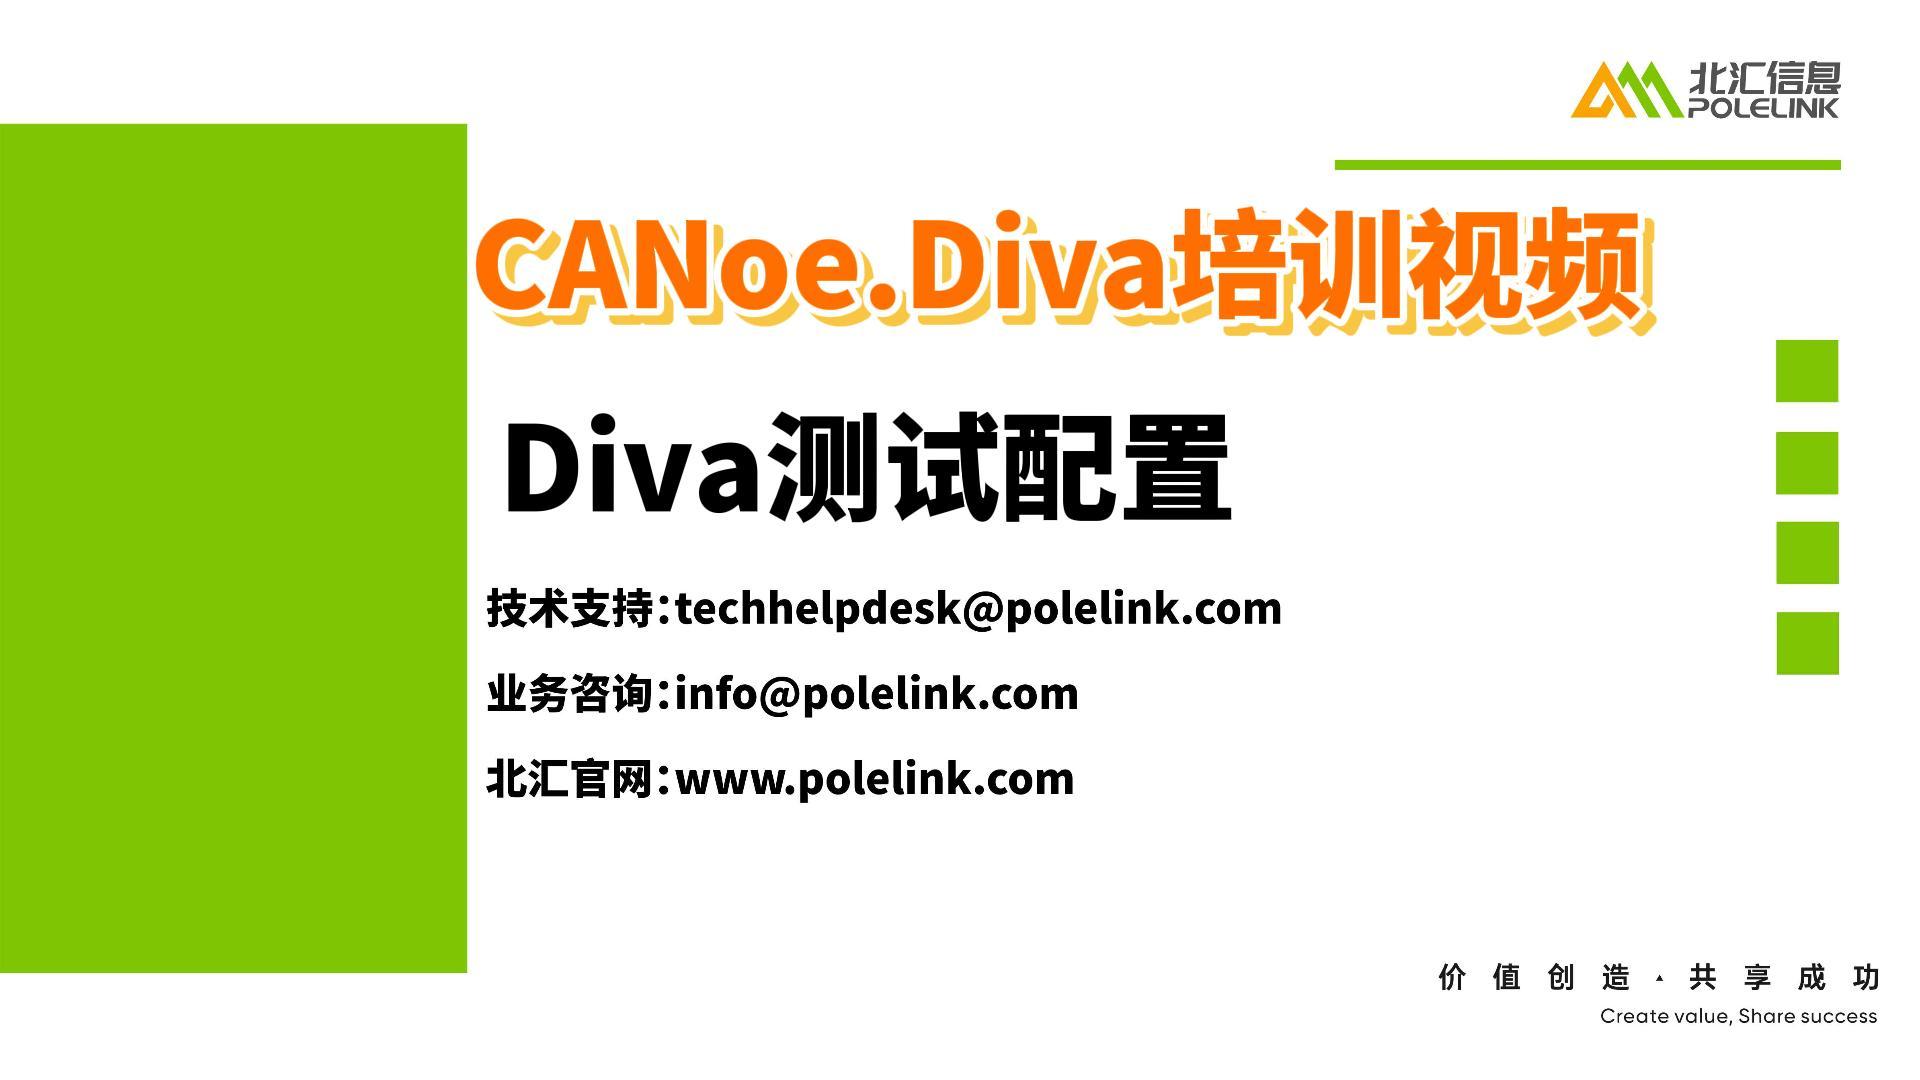 CANoe.Diva培訓視頻-Diva測試配置#CANoe#Diva#診斷自動化測試

 